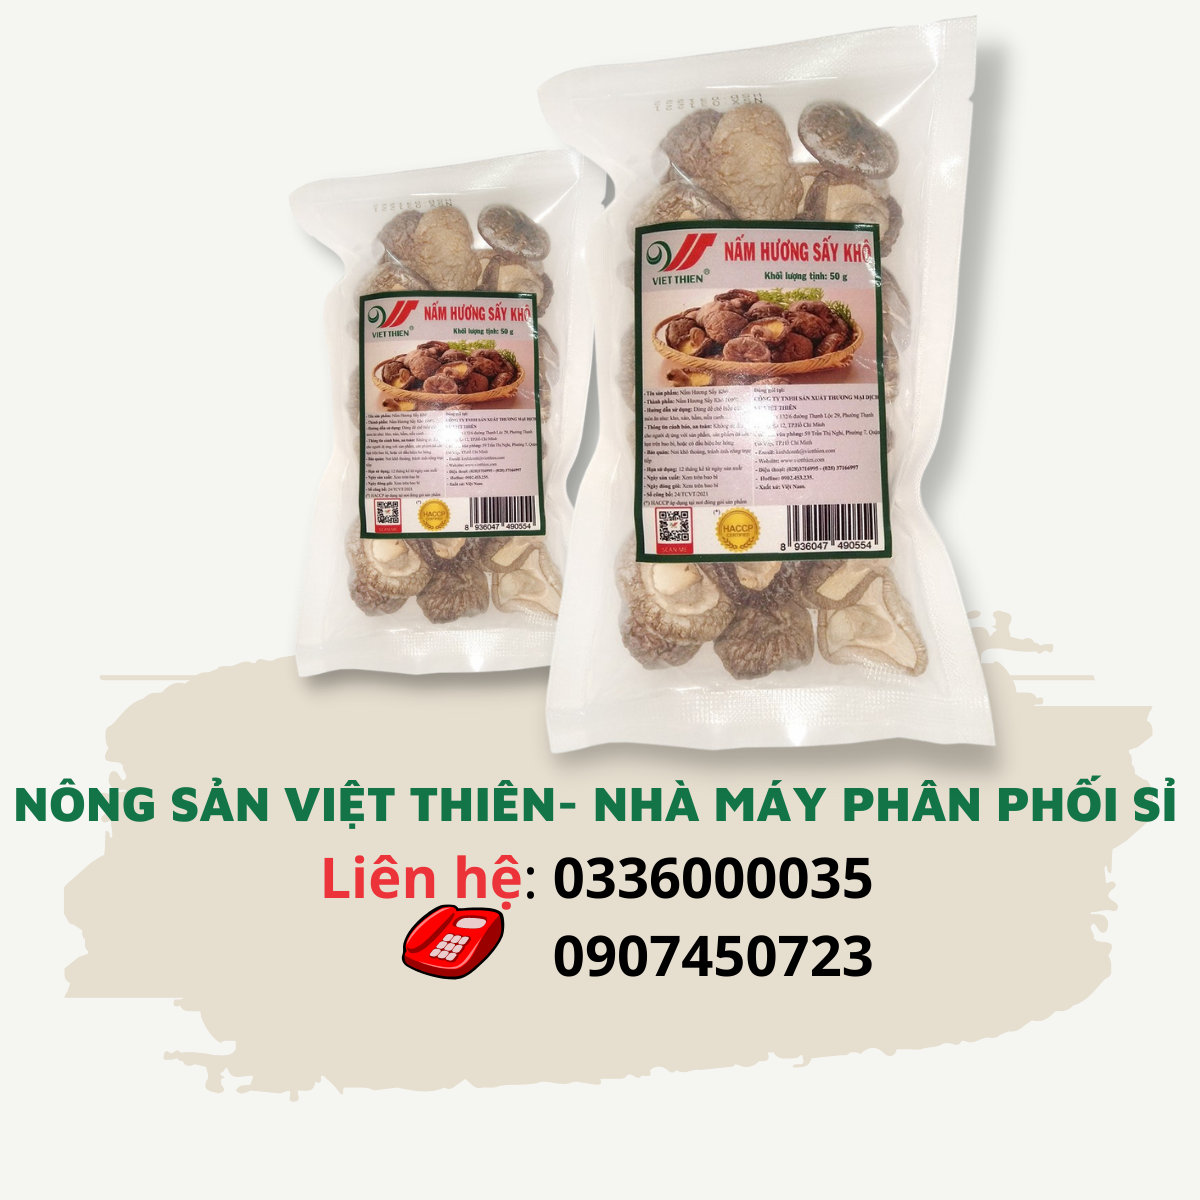 Nấm hương Việt Thiên 50g, nhà máy sản xuất và phân phối nông sản Việt Thiên, giá rẻ